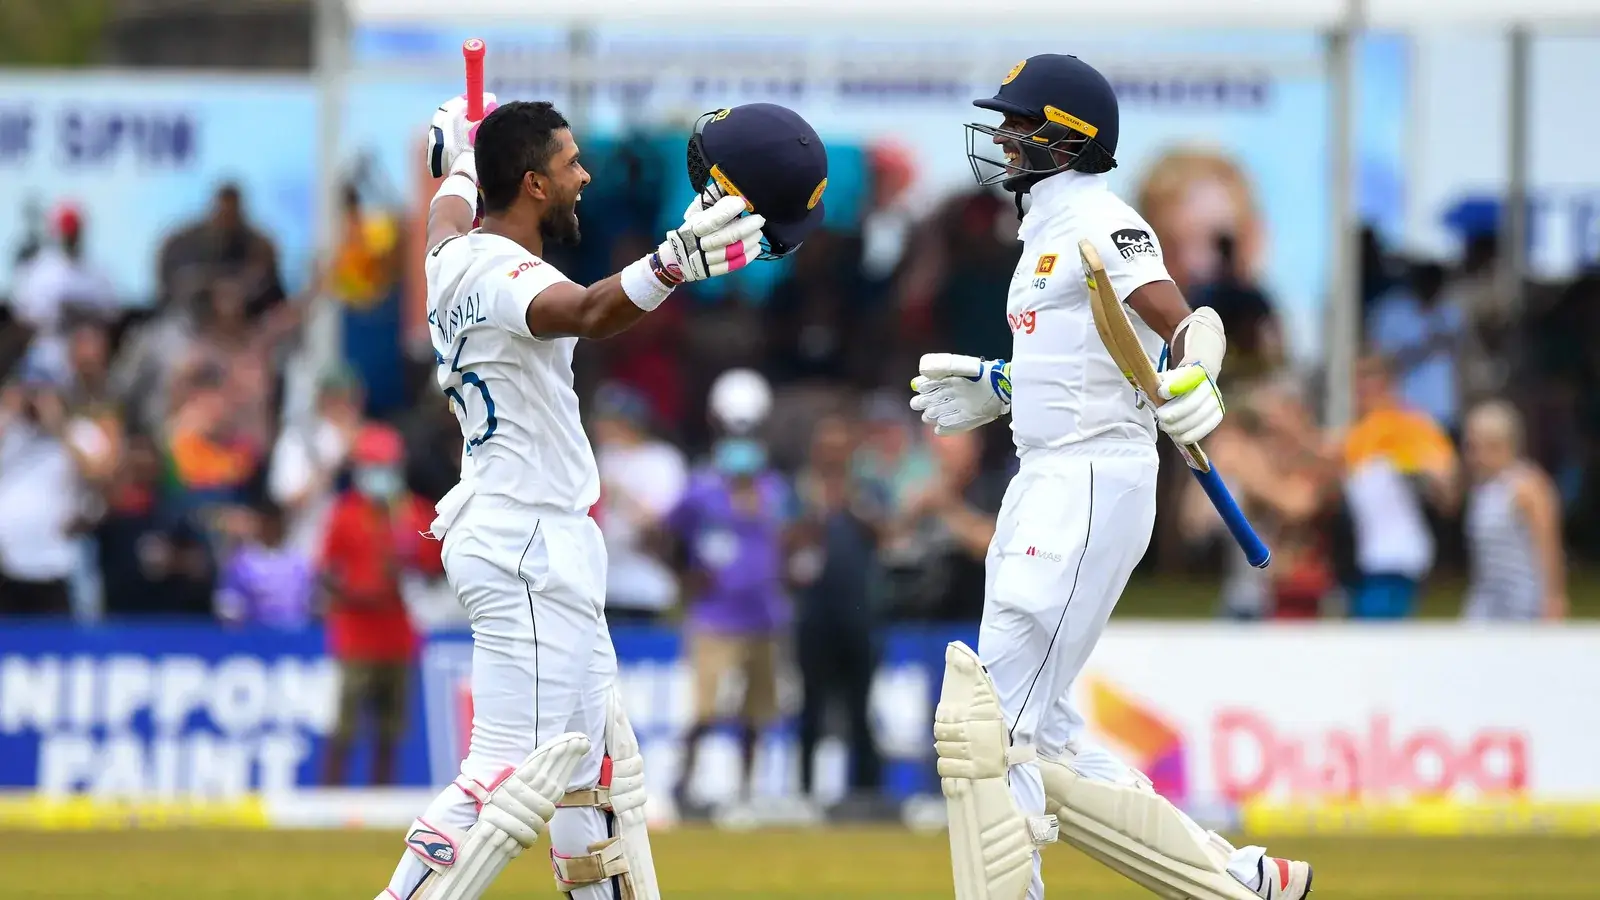  श्रीलंका ने ऑस्ट्रेलिया को पारी और 39 रनों से हराकर बराबरी की श्रृंखला |  क्रिकेट
